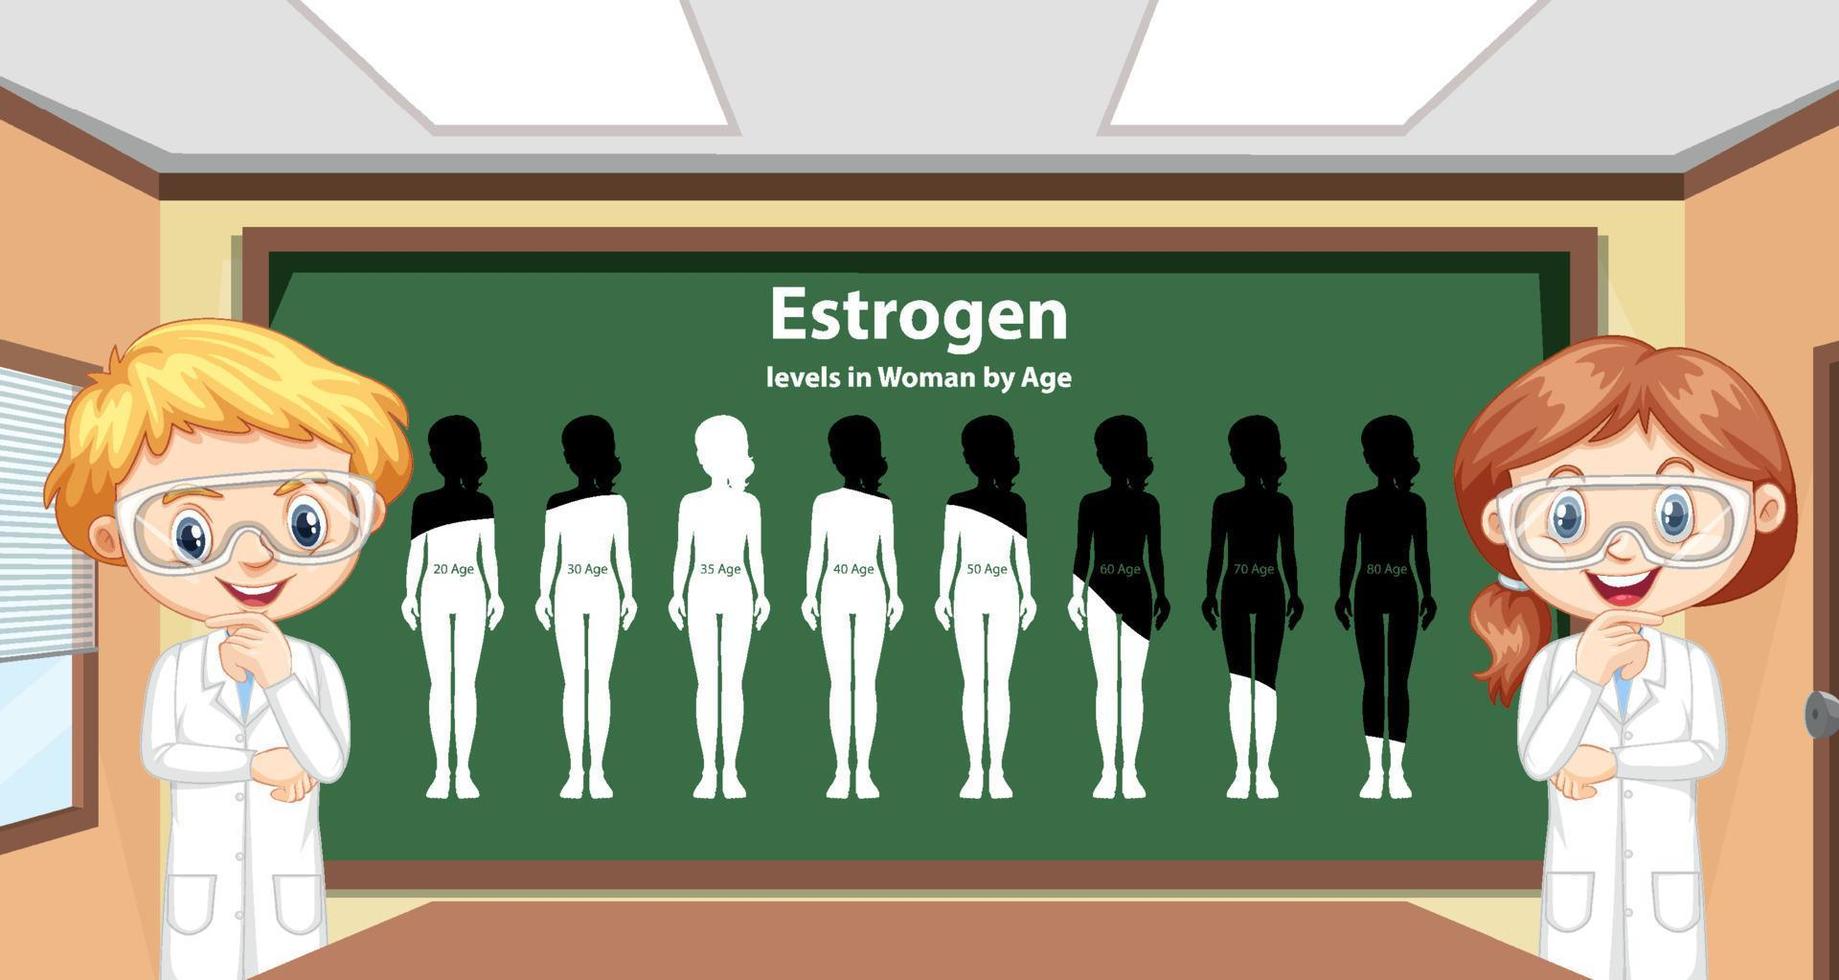 taux d'oestrogène chez les femmes selon l'âge vecteur